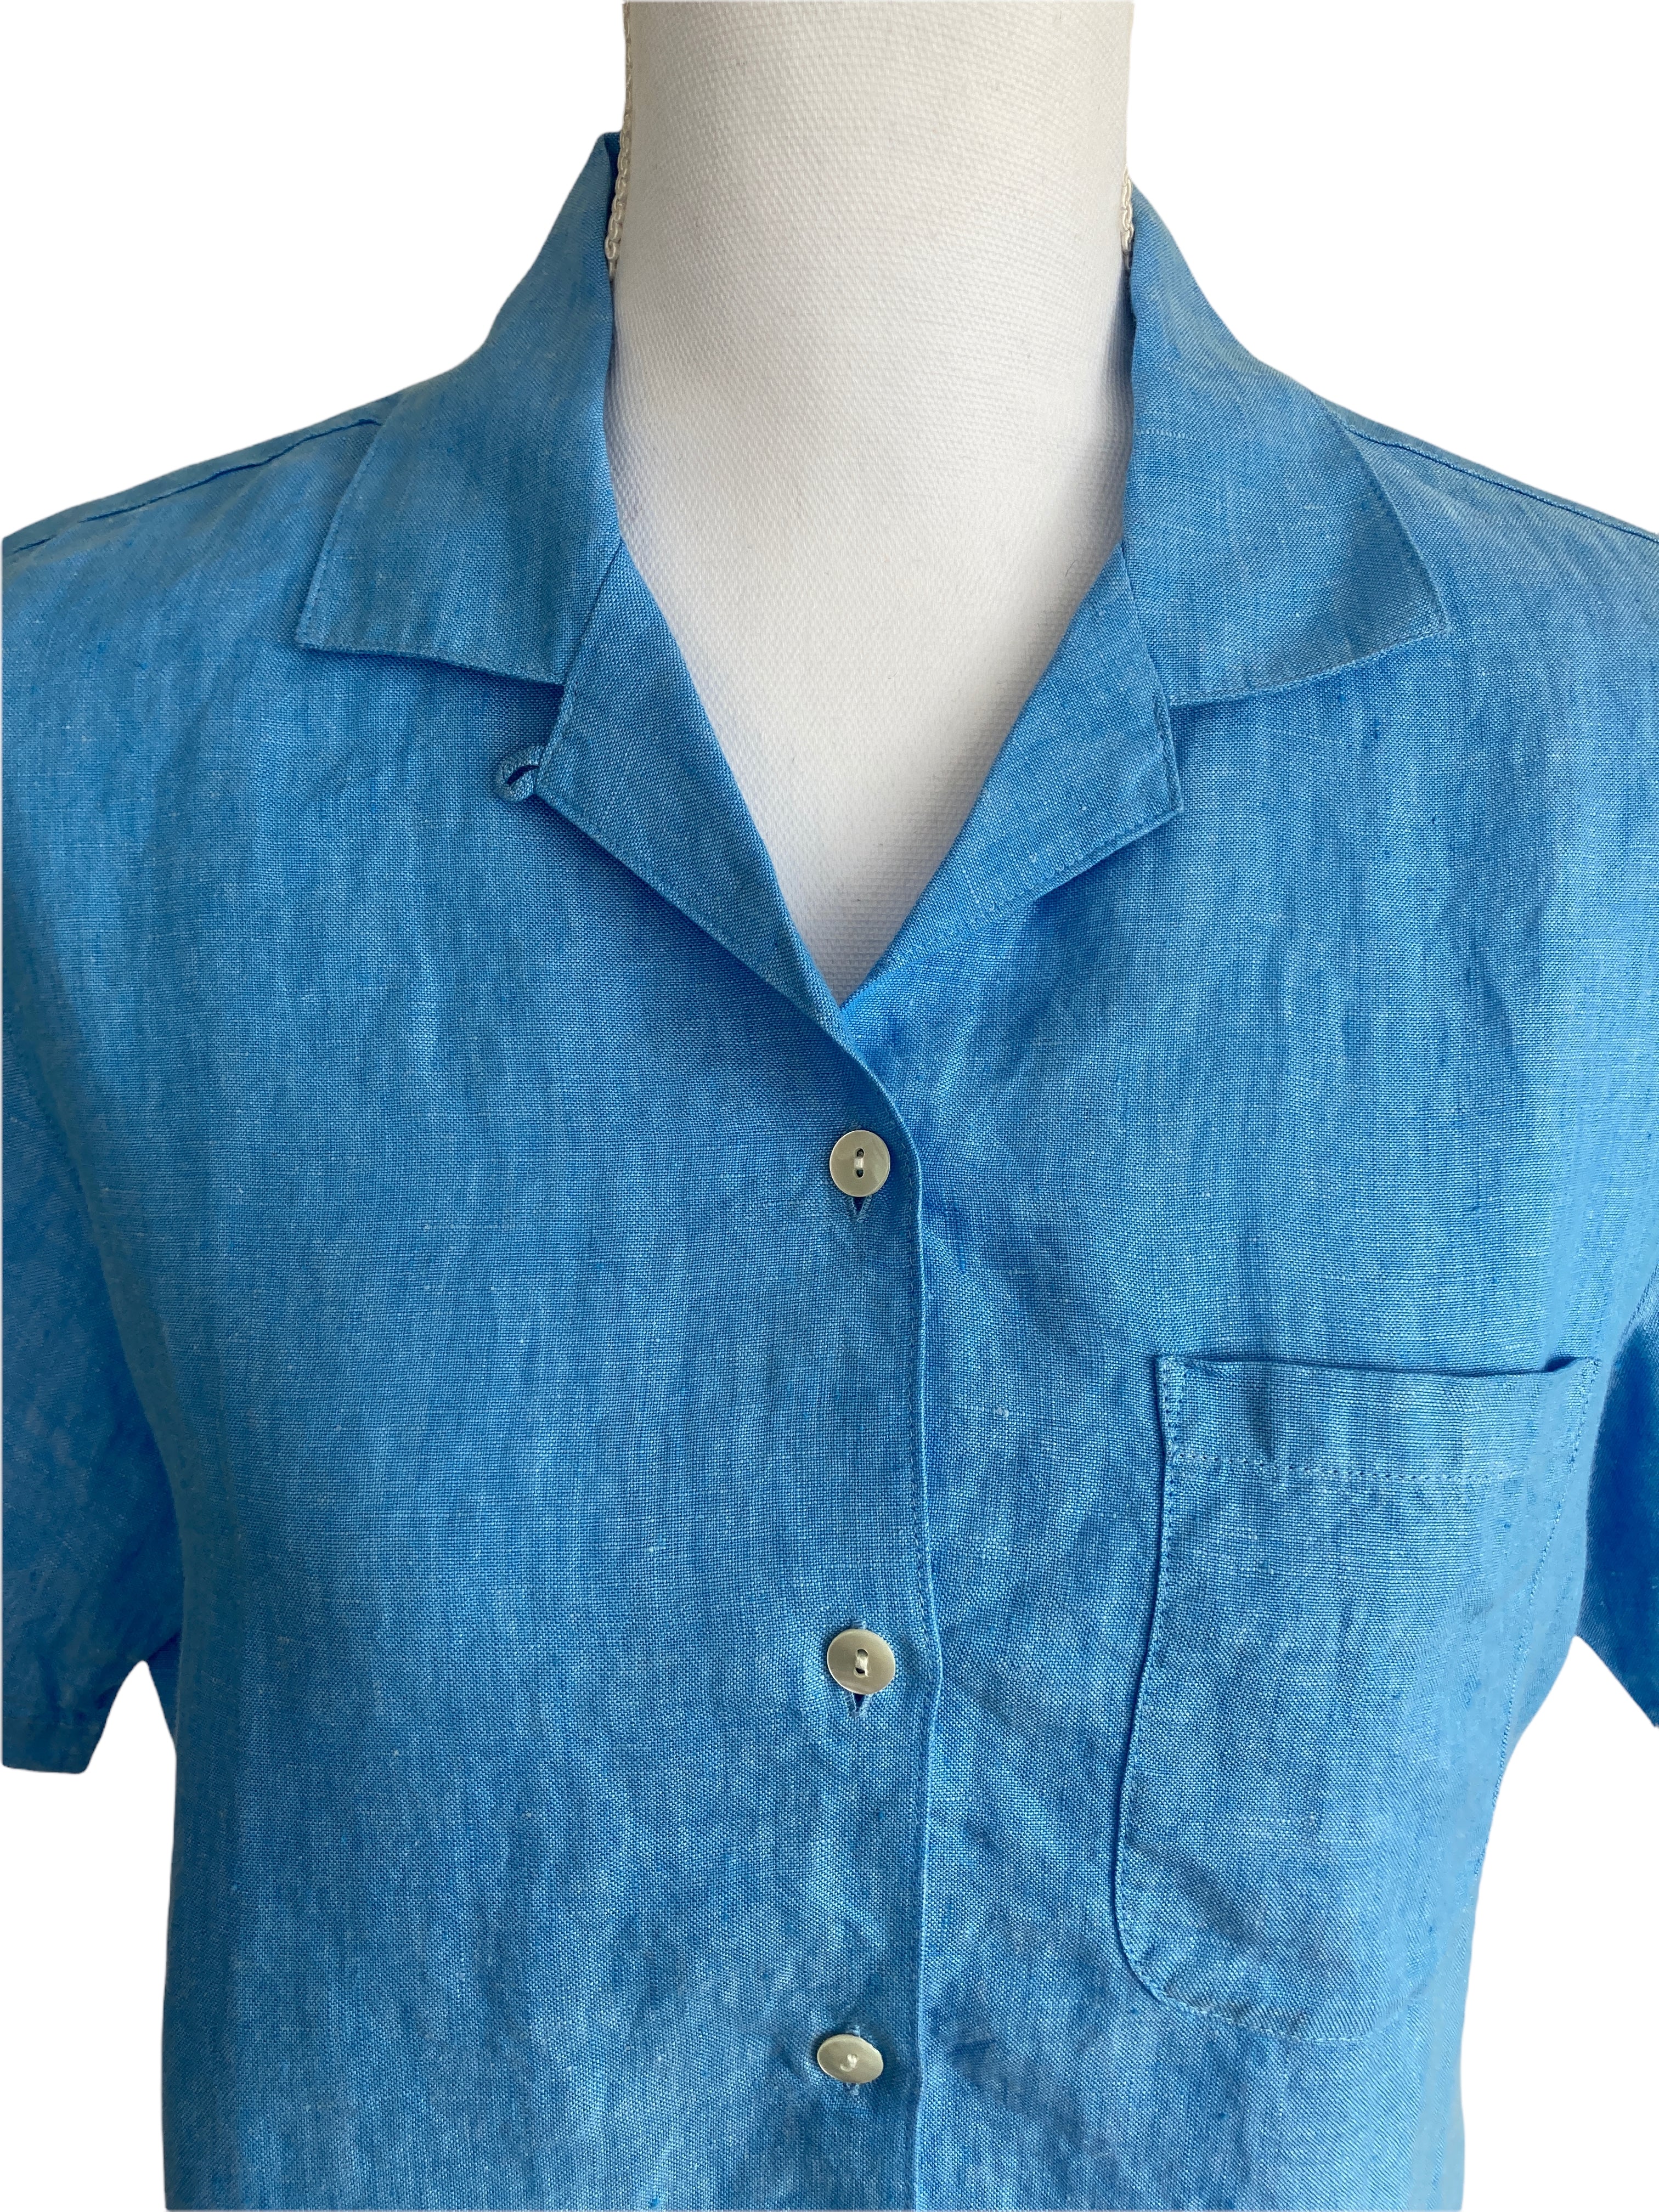 L.L. Bean Blue Linen Short Sleeve Shirt, S